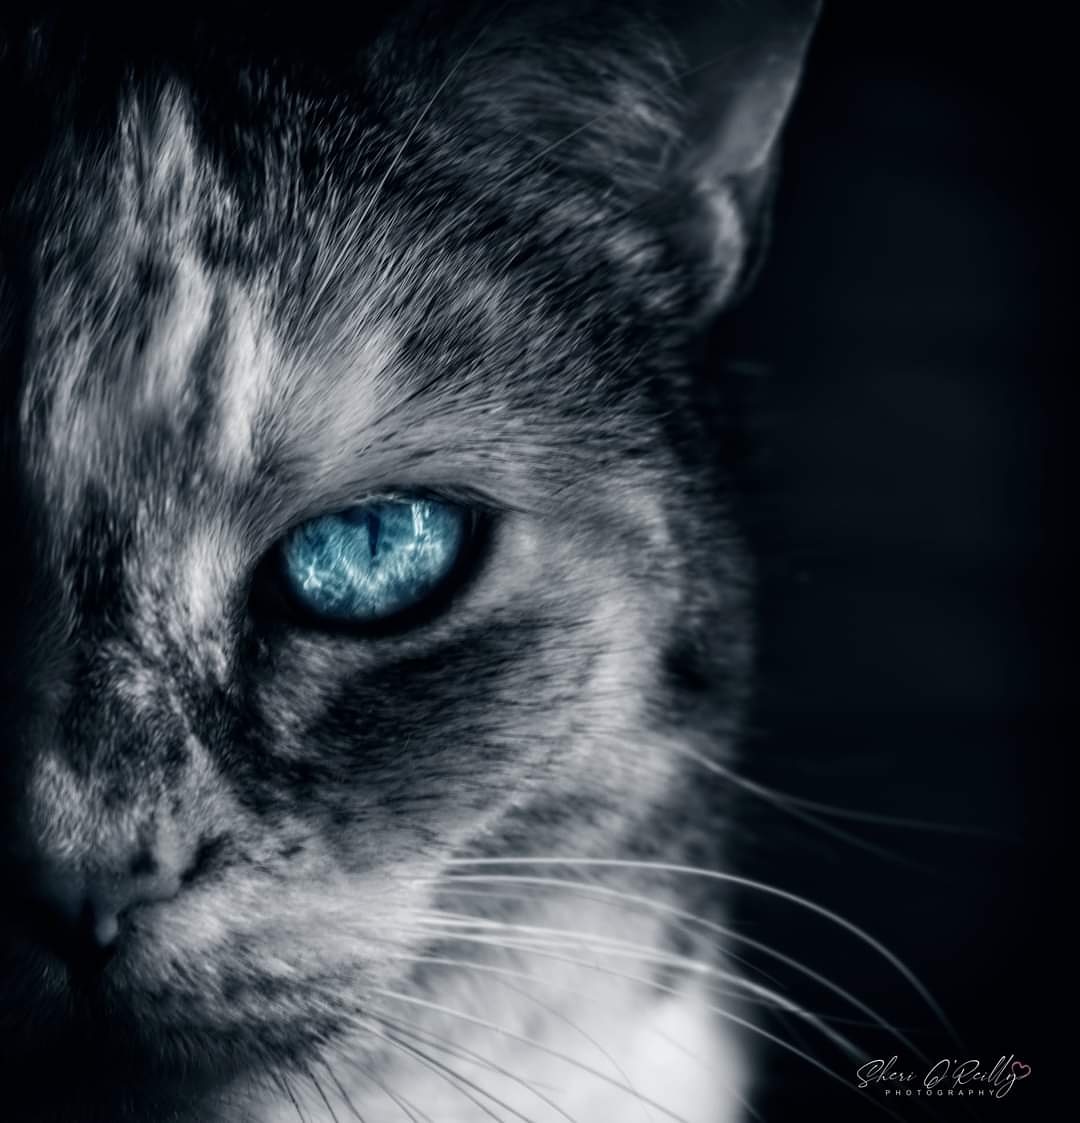 Steely stare
#WexMondays #bnwmood #spotcolour #catseye #CatsOfTwitter